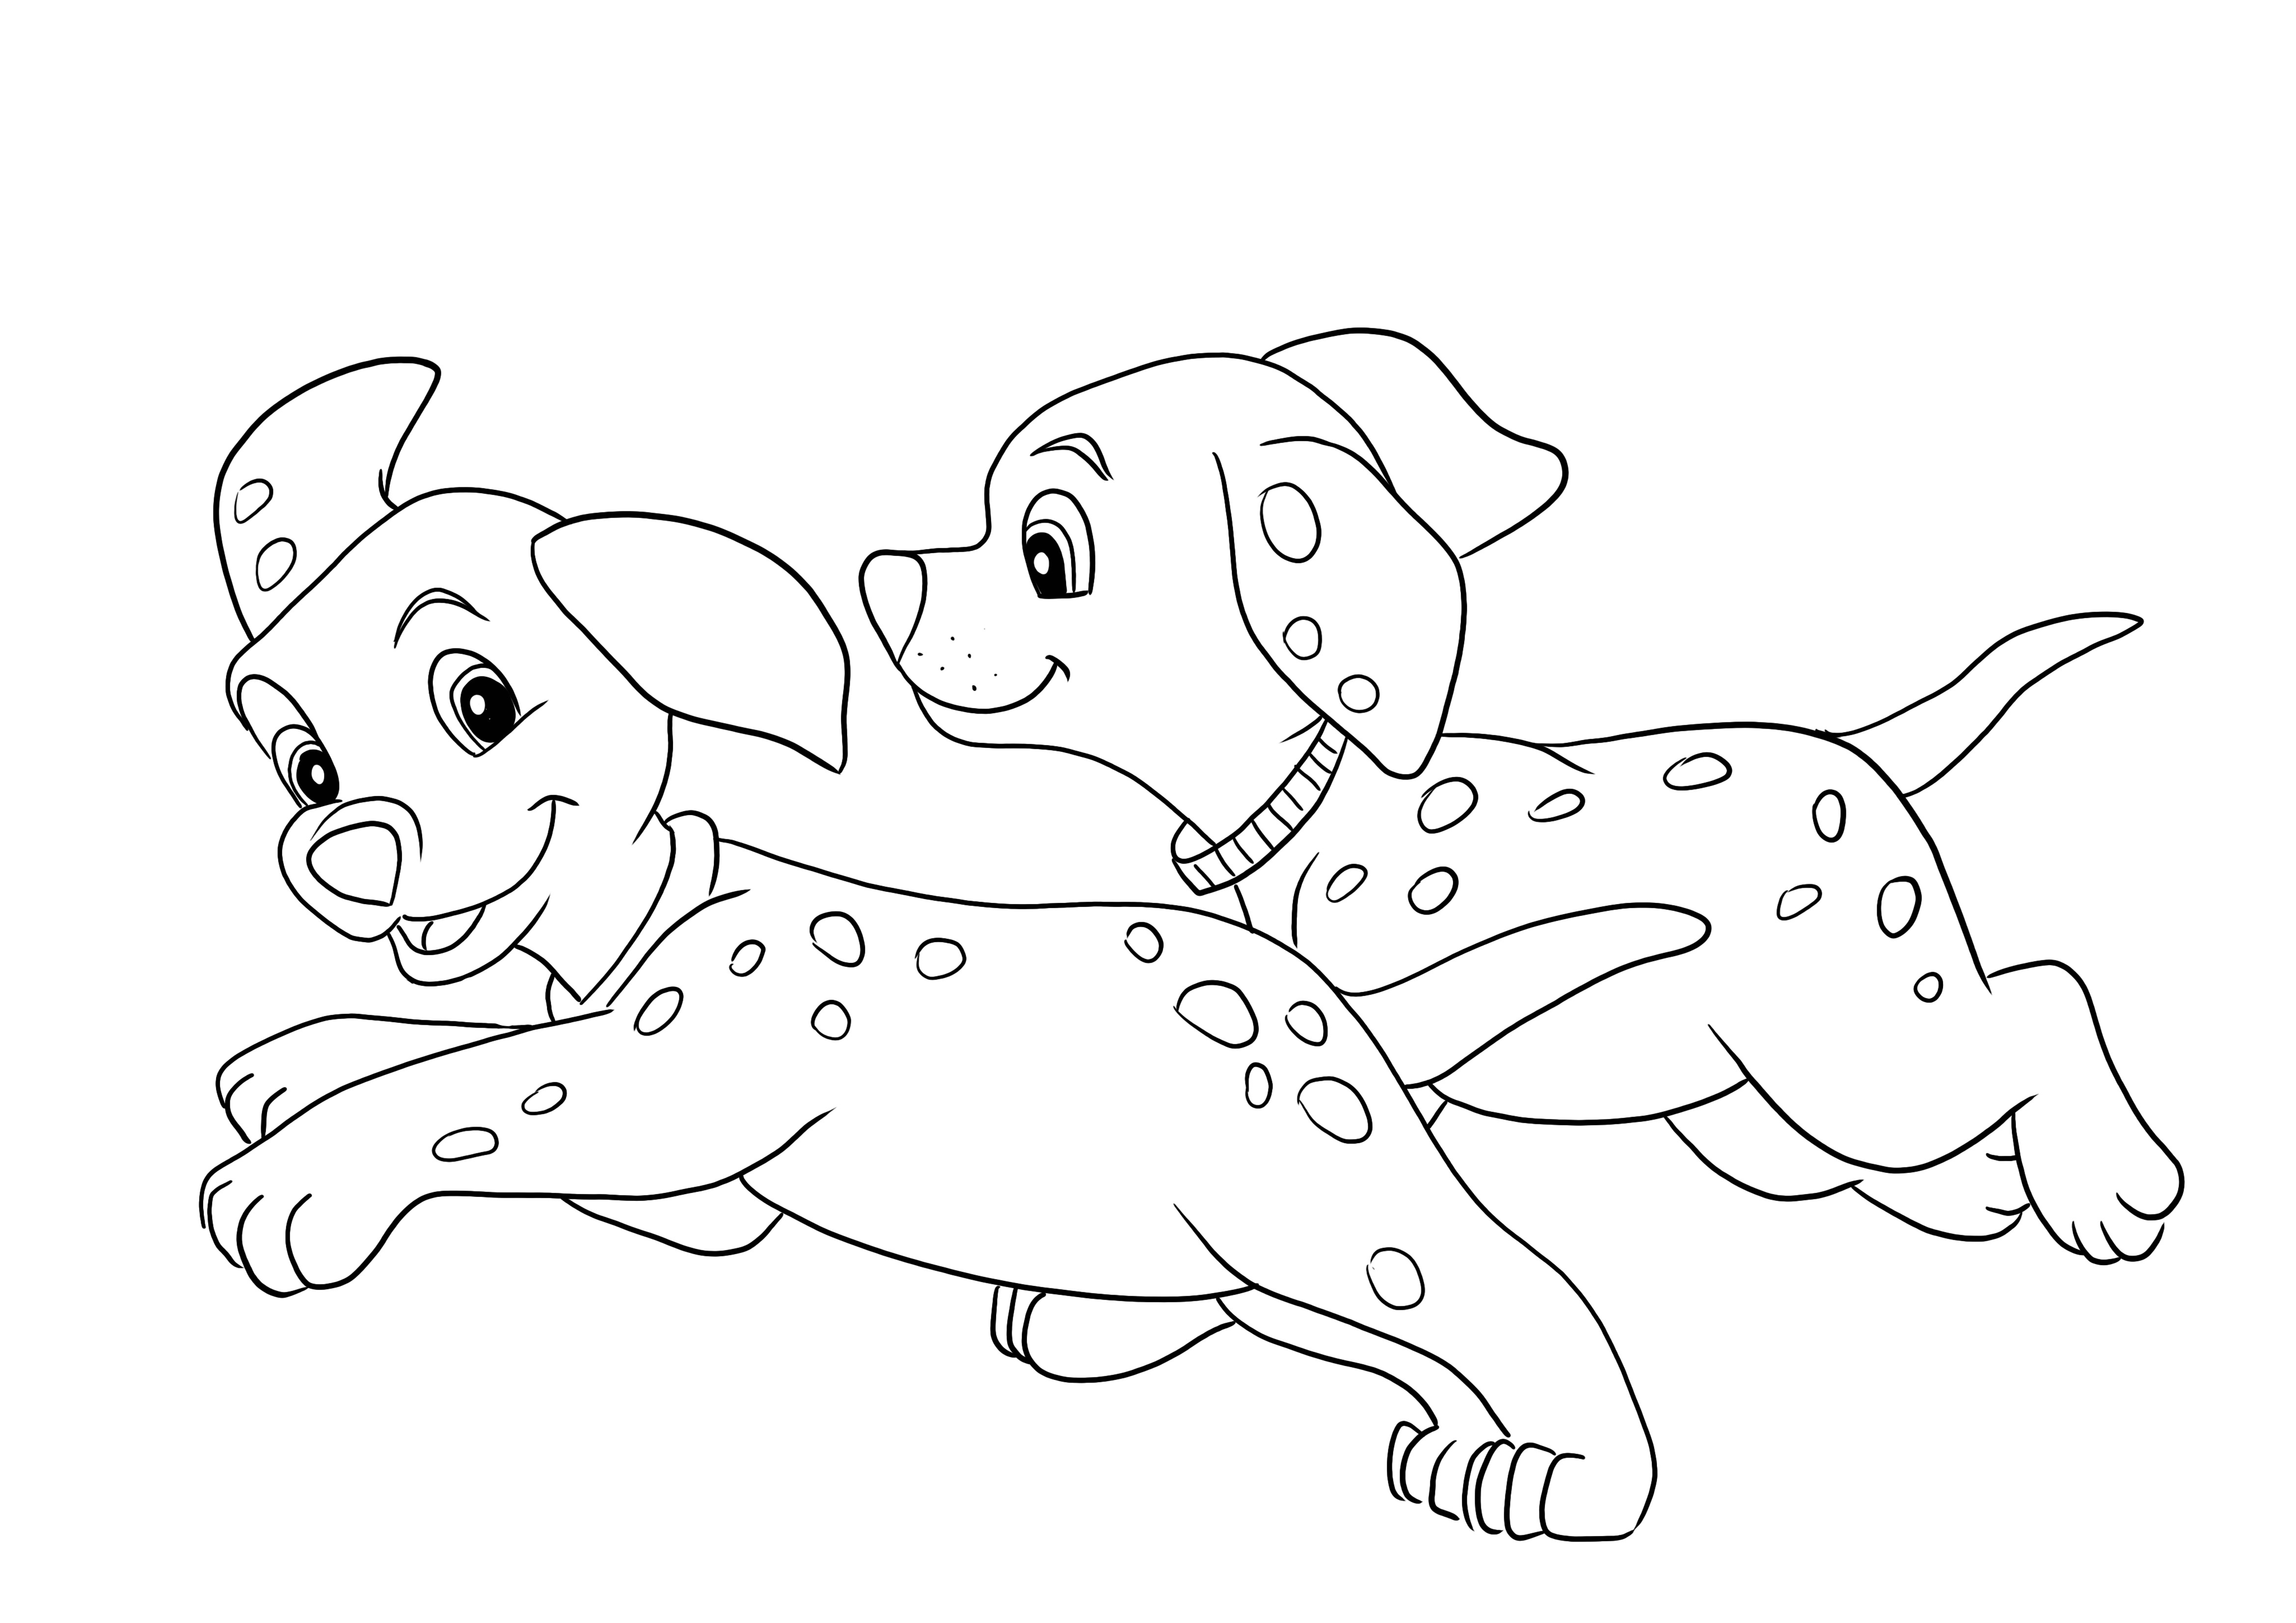 Lindos cachorros dálmatas corren imagen para colorear gratis para descargar fácilmente